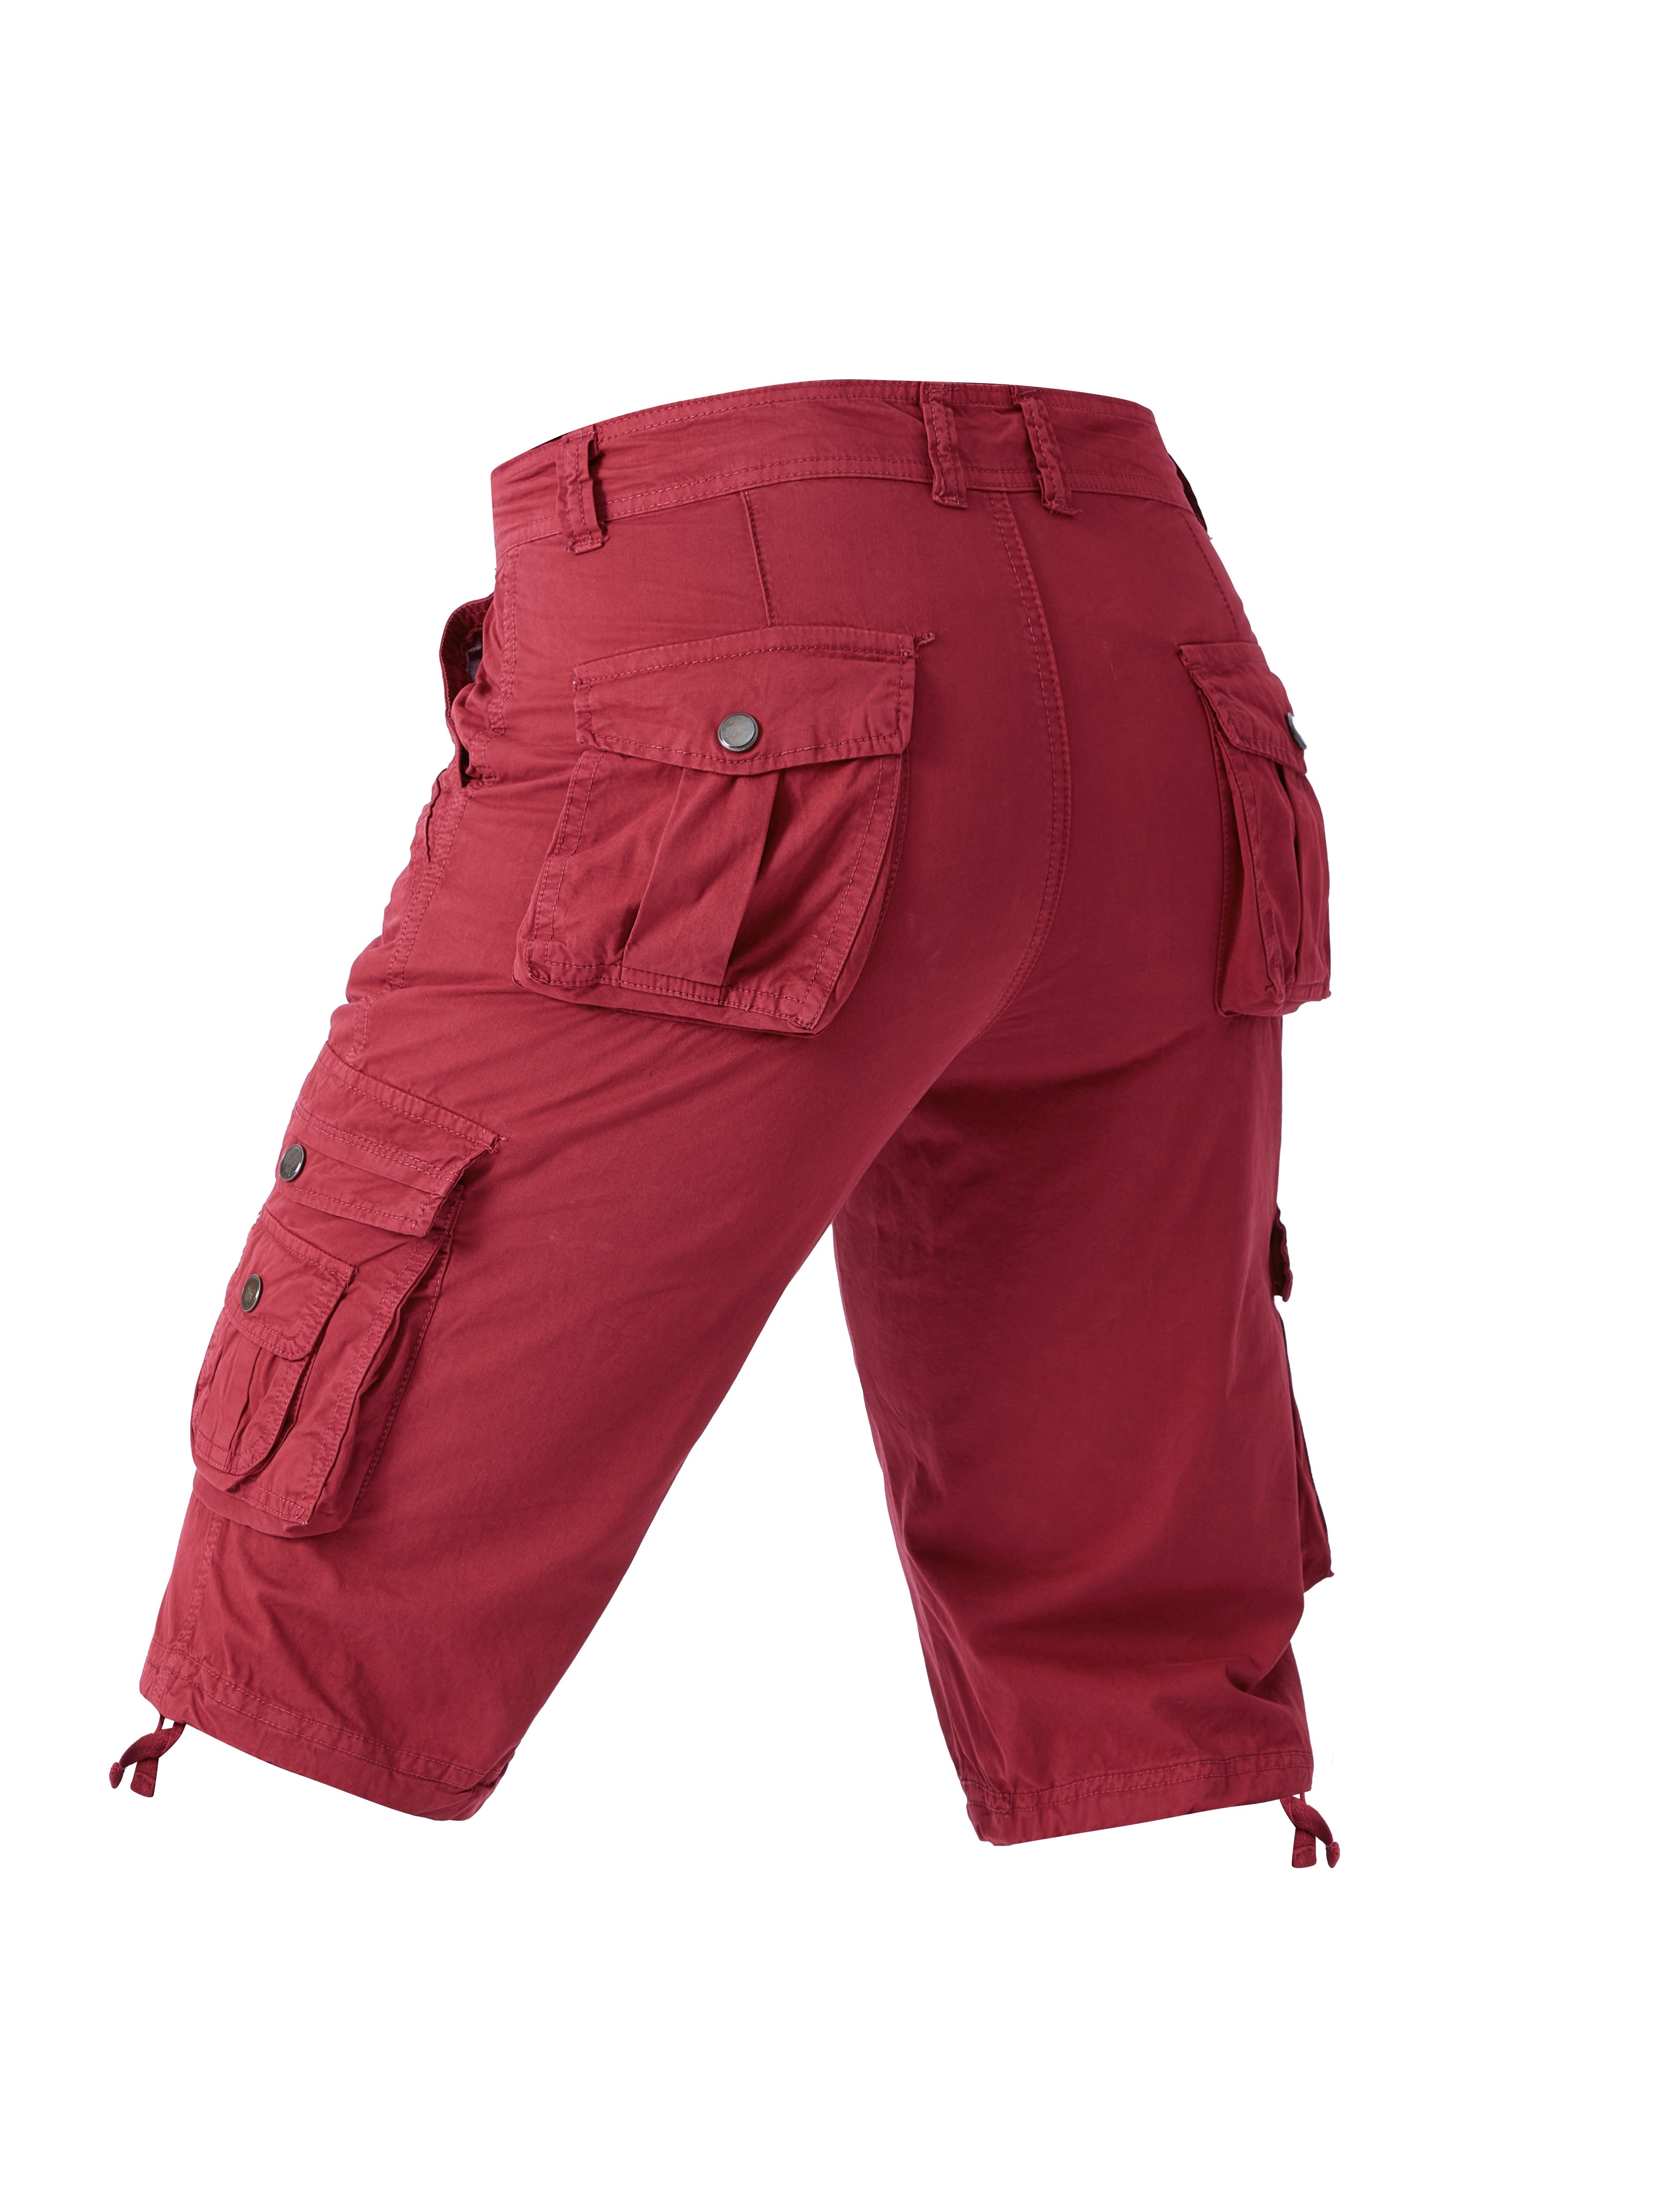 Red Trendy Short Pant For Men